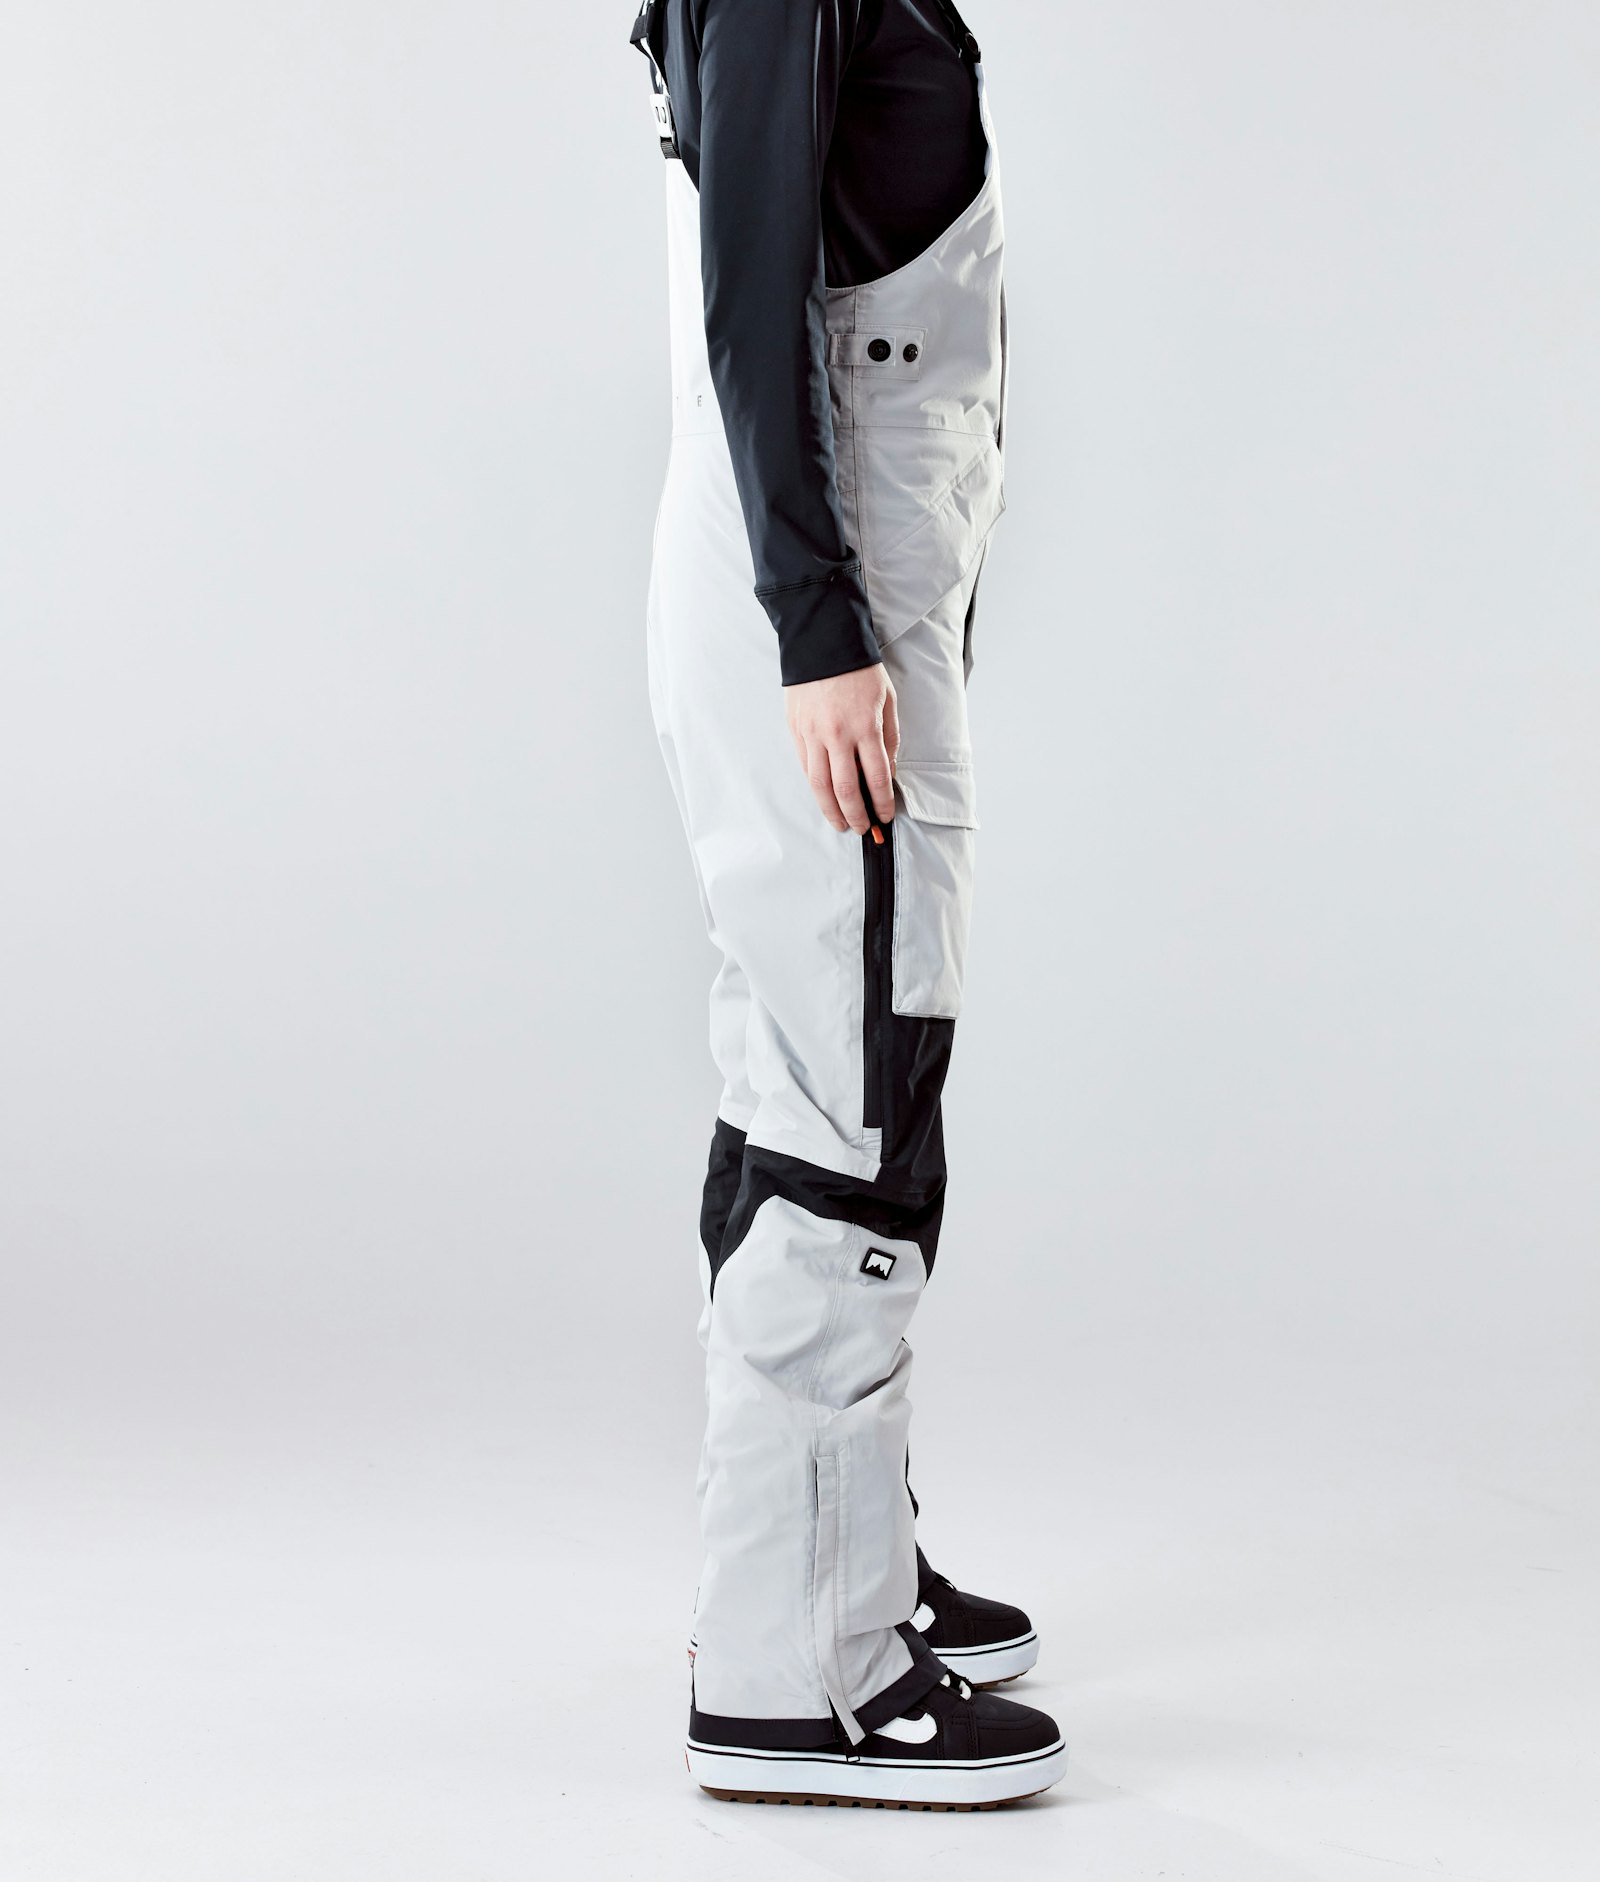 Fawk W 2020 Snowboardhose Damen Light Grey/Black, Bild 2 von 6